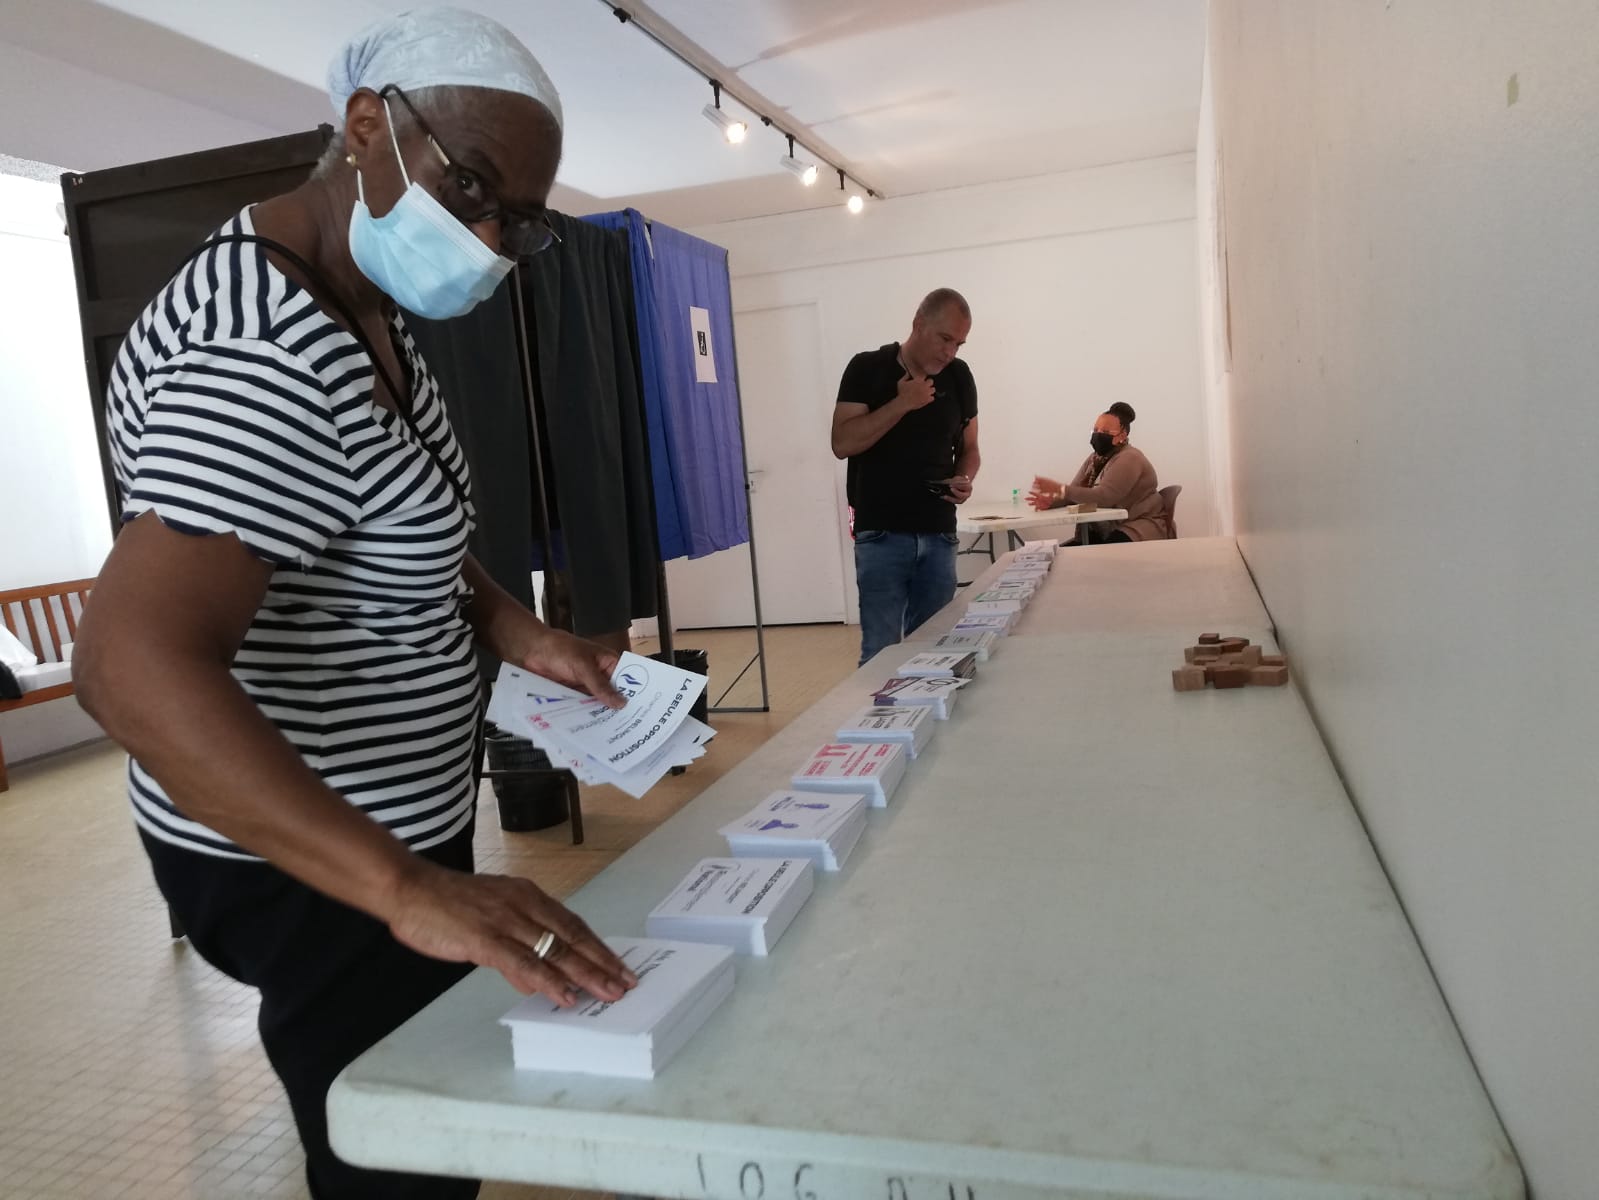     Législatives 2022 : l'abstention va-t-elle battre des records en Martinique ? 

